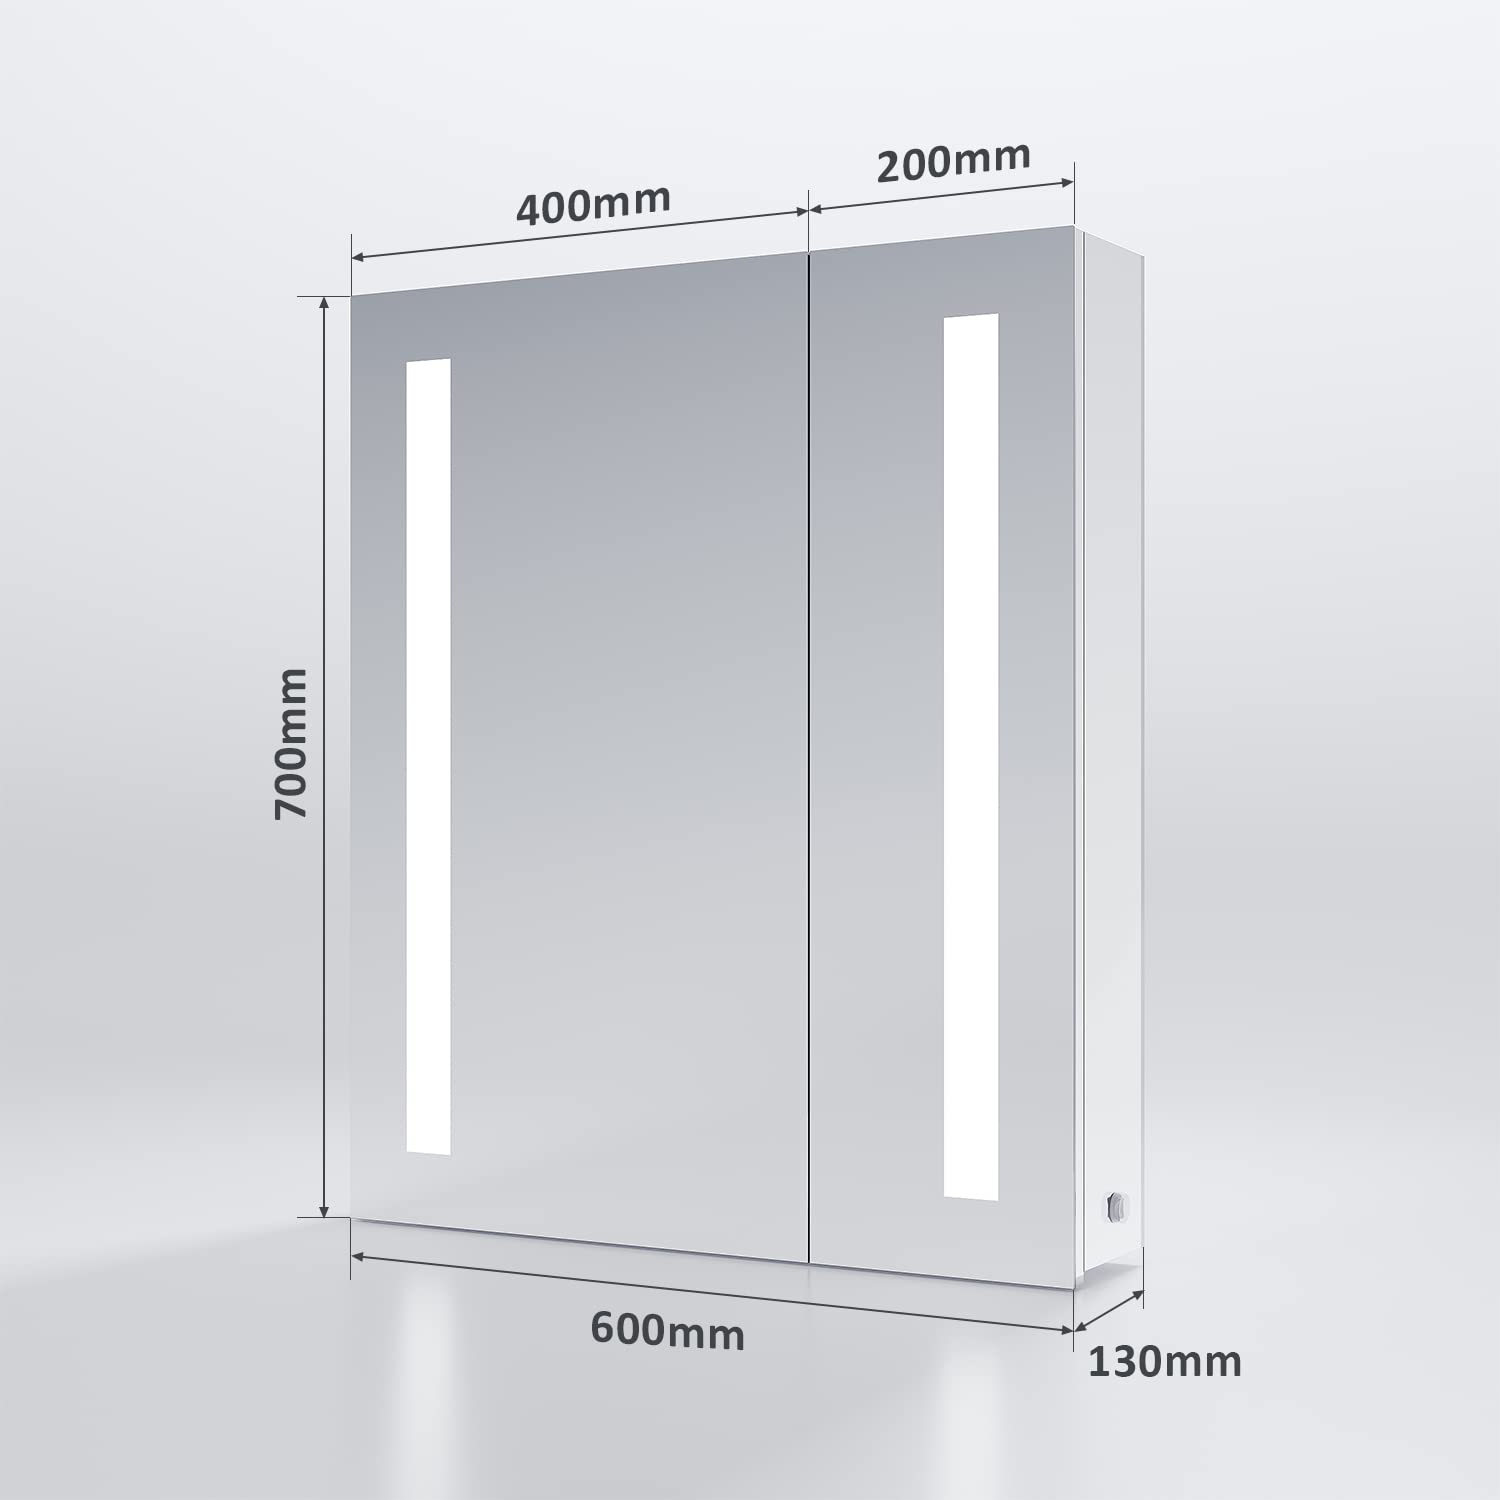 SONNI Spiegelschrank Bad mit Beleuchtung 60 cm breit Edelstahl LED doppeltürig Badezimmerschrank, mit Steckdose und Kippschalter, Scharnier Design, für Badezimmer IP44 Wasserciht